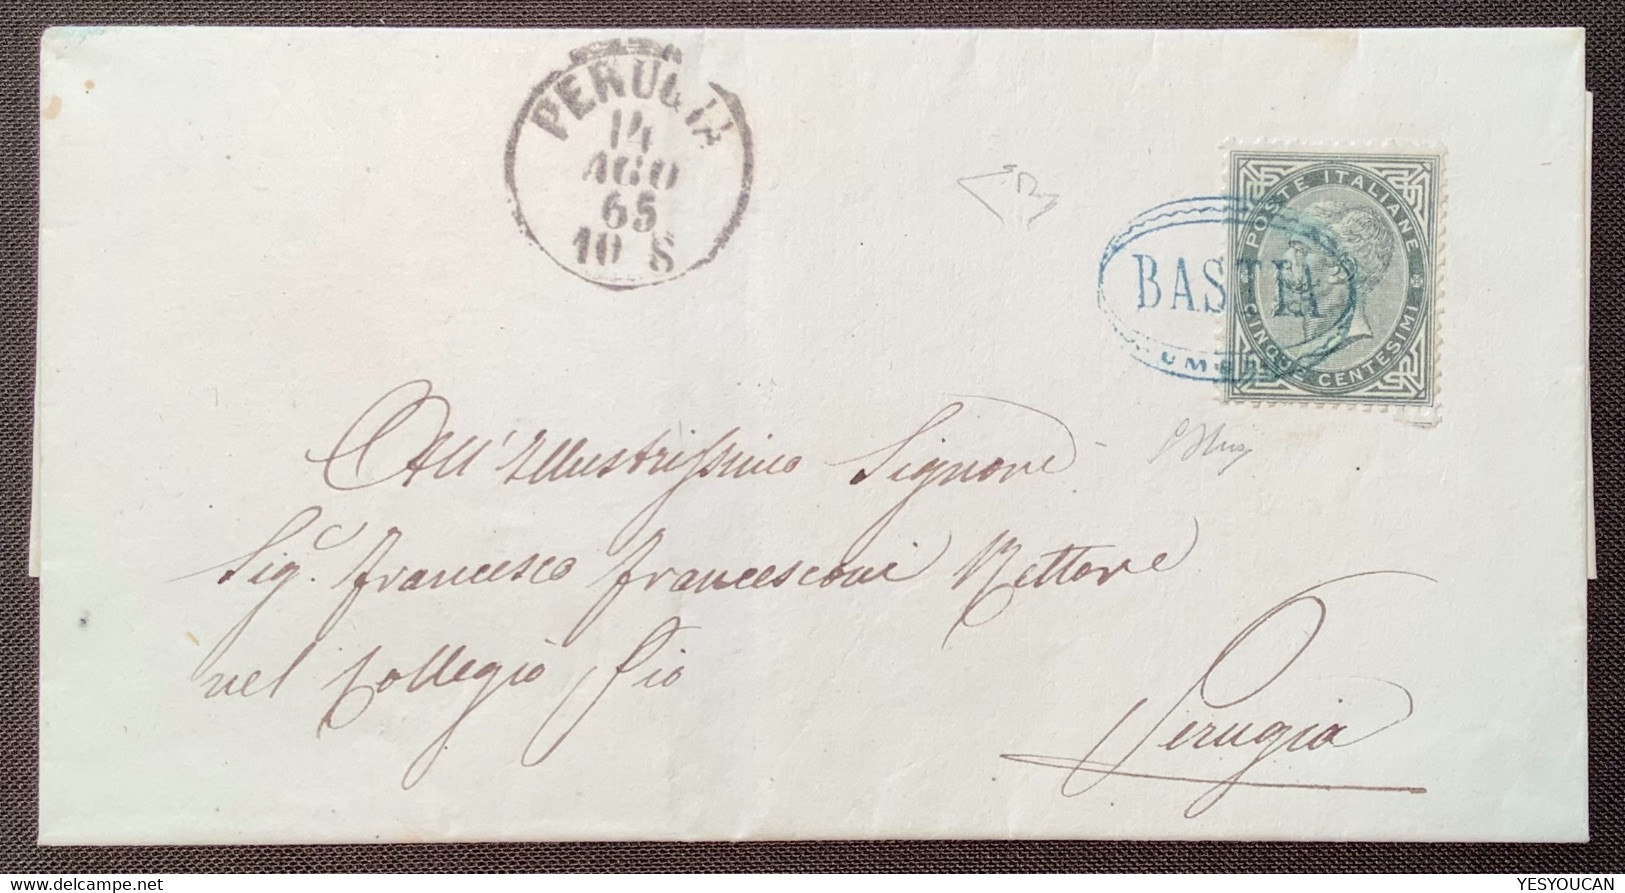 BASTIA UMBRIA RRR ! Lettera>PERUGIA1865 Regno D’ Italia 1863 L16 Certificato Enzo Diena (Italy Rare Cover Cert Italie - Marcophilie